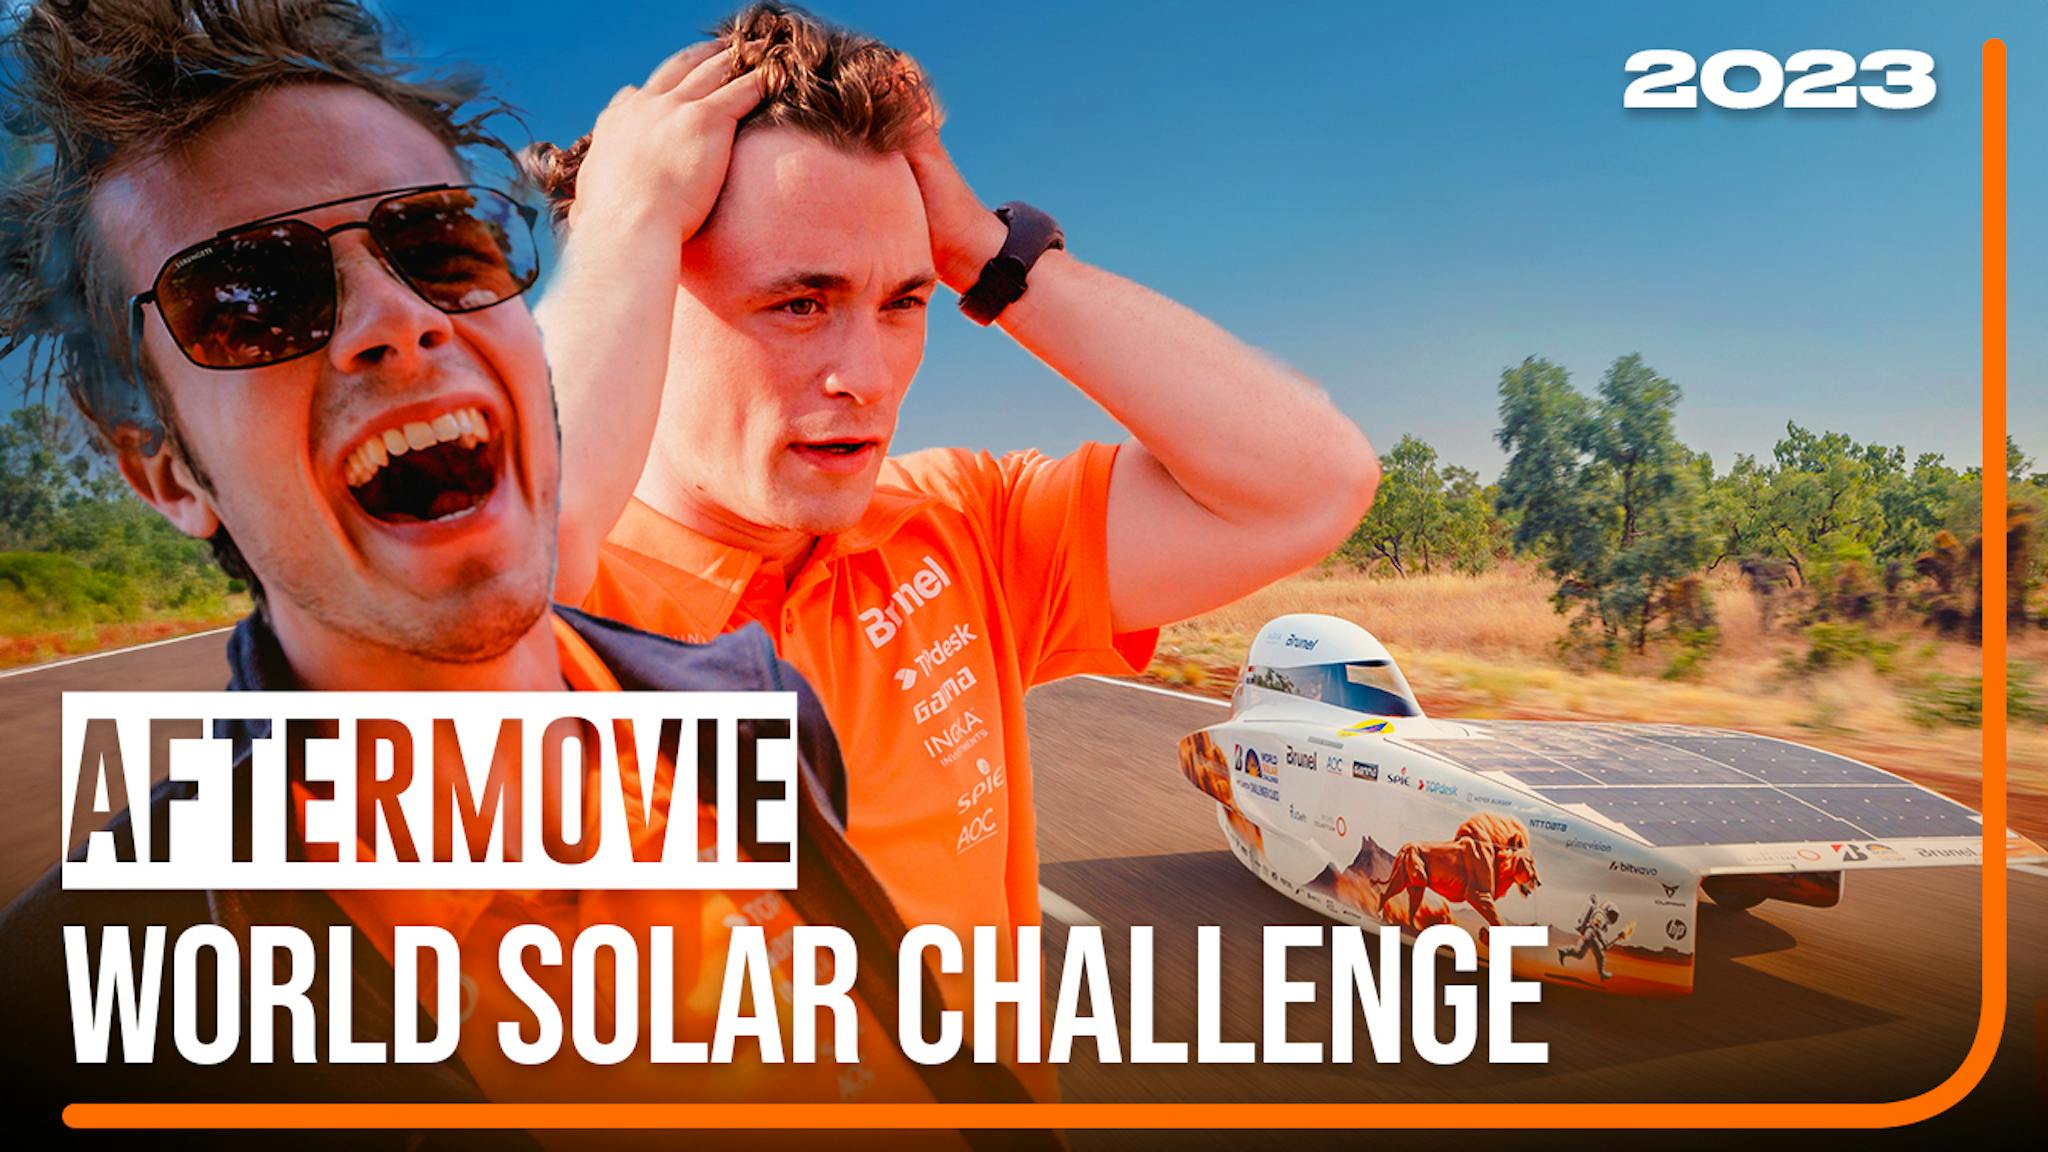 Aftermovie - World Solar Challenge